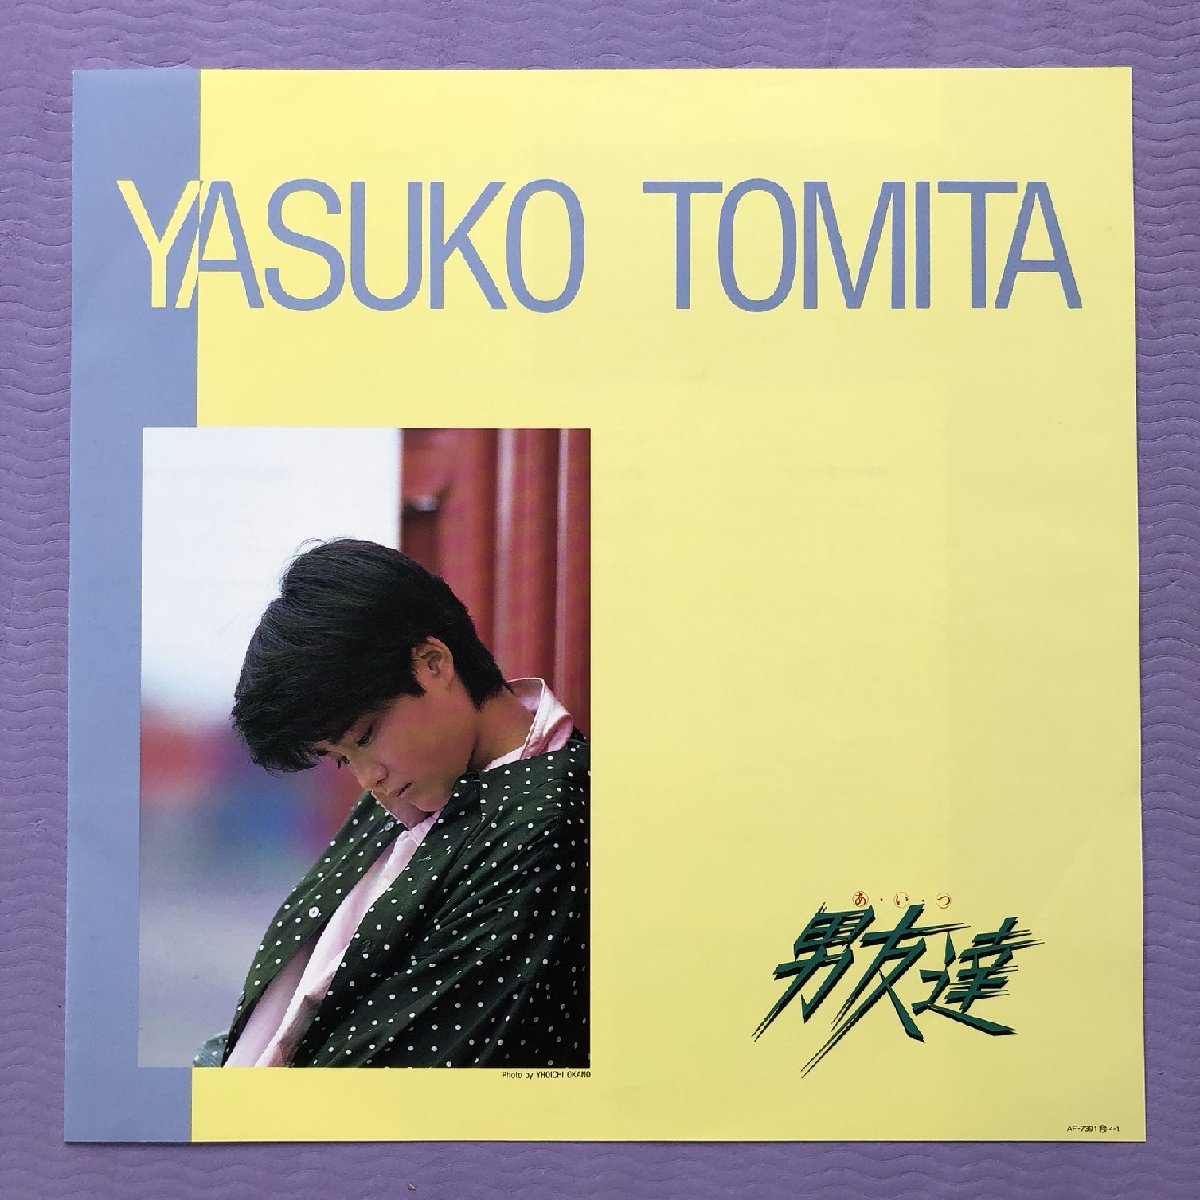  прекрасный запись прекрасный jacket прекрасный товар Tomita Yasuko Yasuko Tomita 1985 год LP запись мужчина .. с лентой J-Poptake кожа yukihite внутри ... Suzuki kissa blow приятный искривление предлагается 